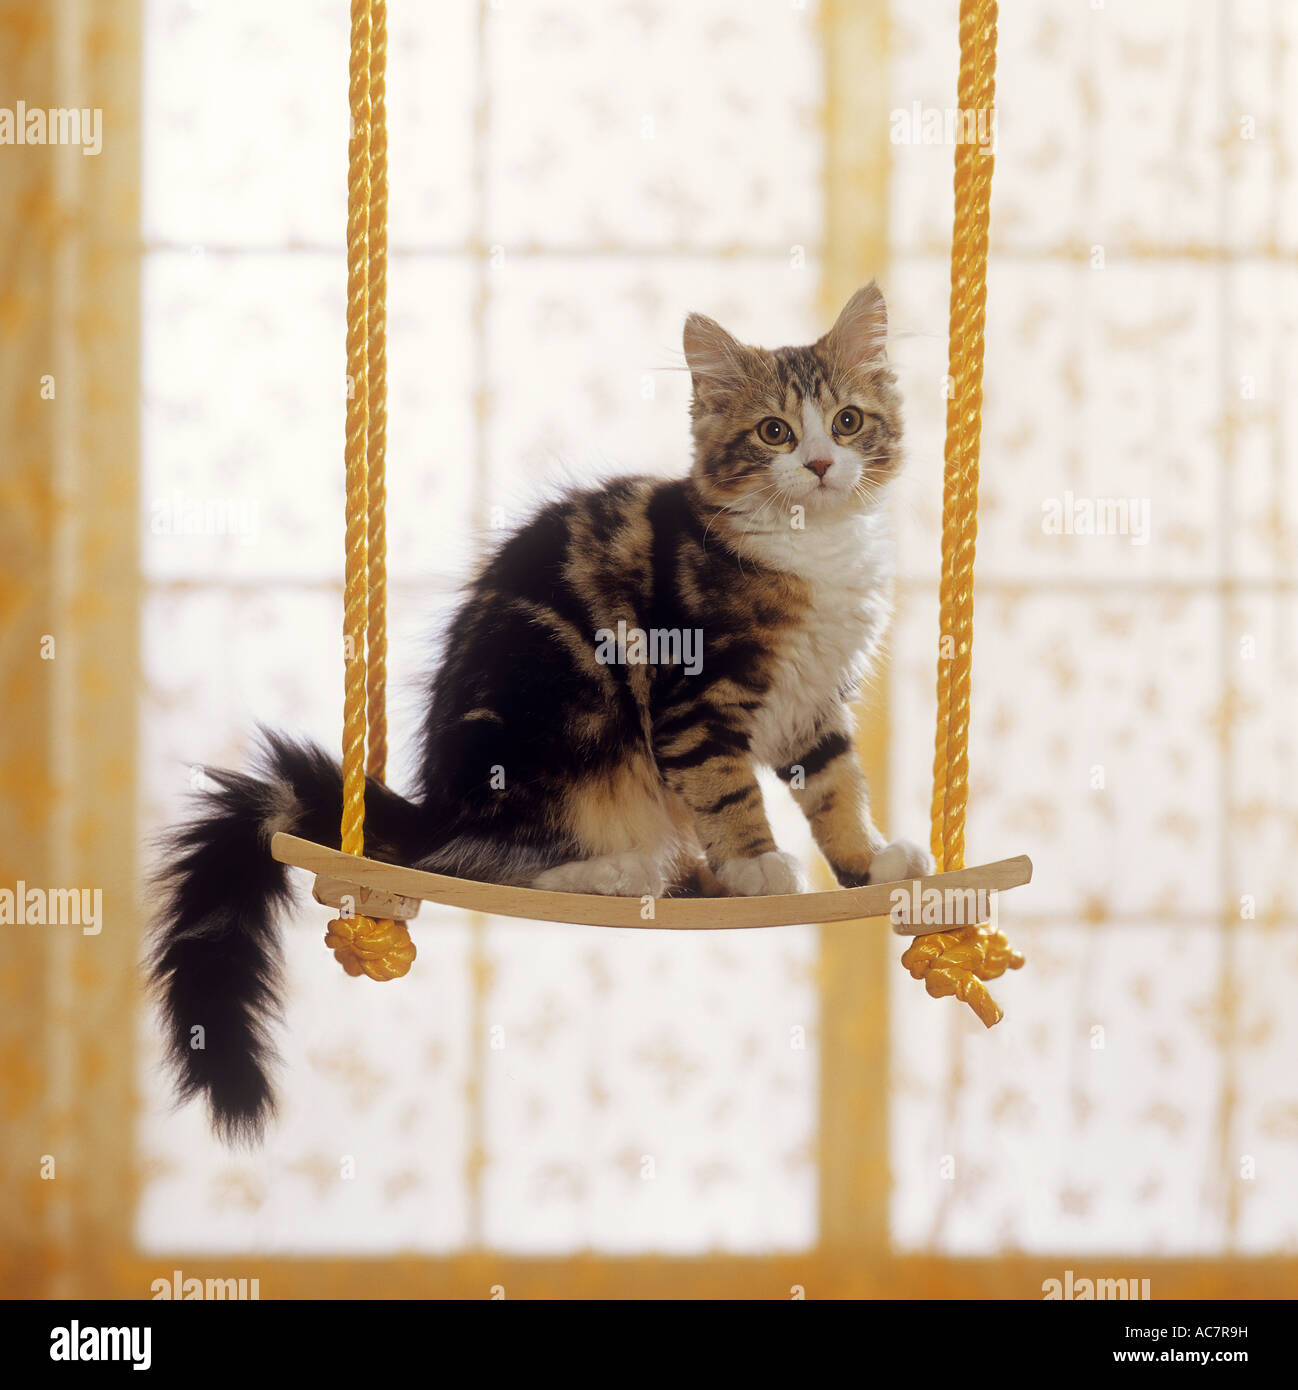 kitten on swing Stock Photo